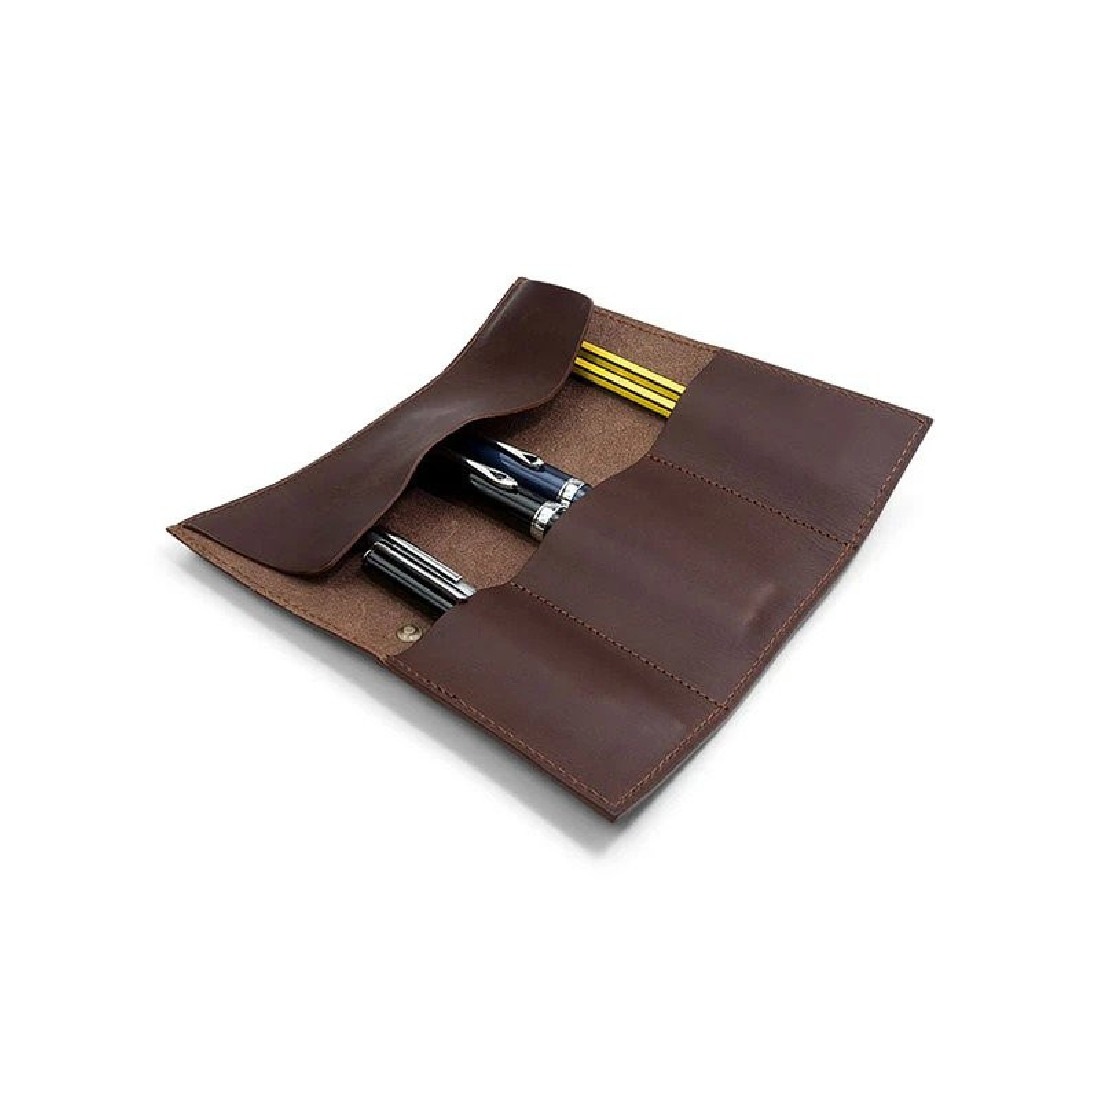 Paper Republic chestnut leather pen & pencil case